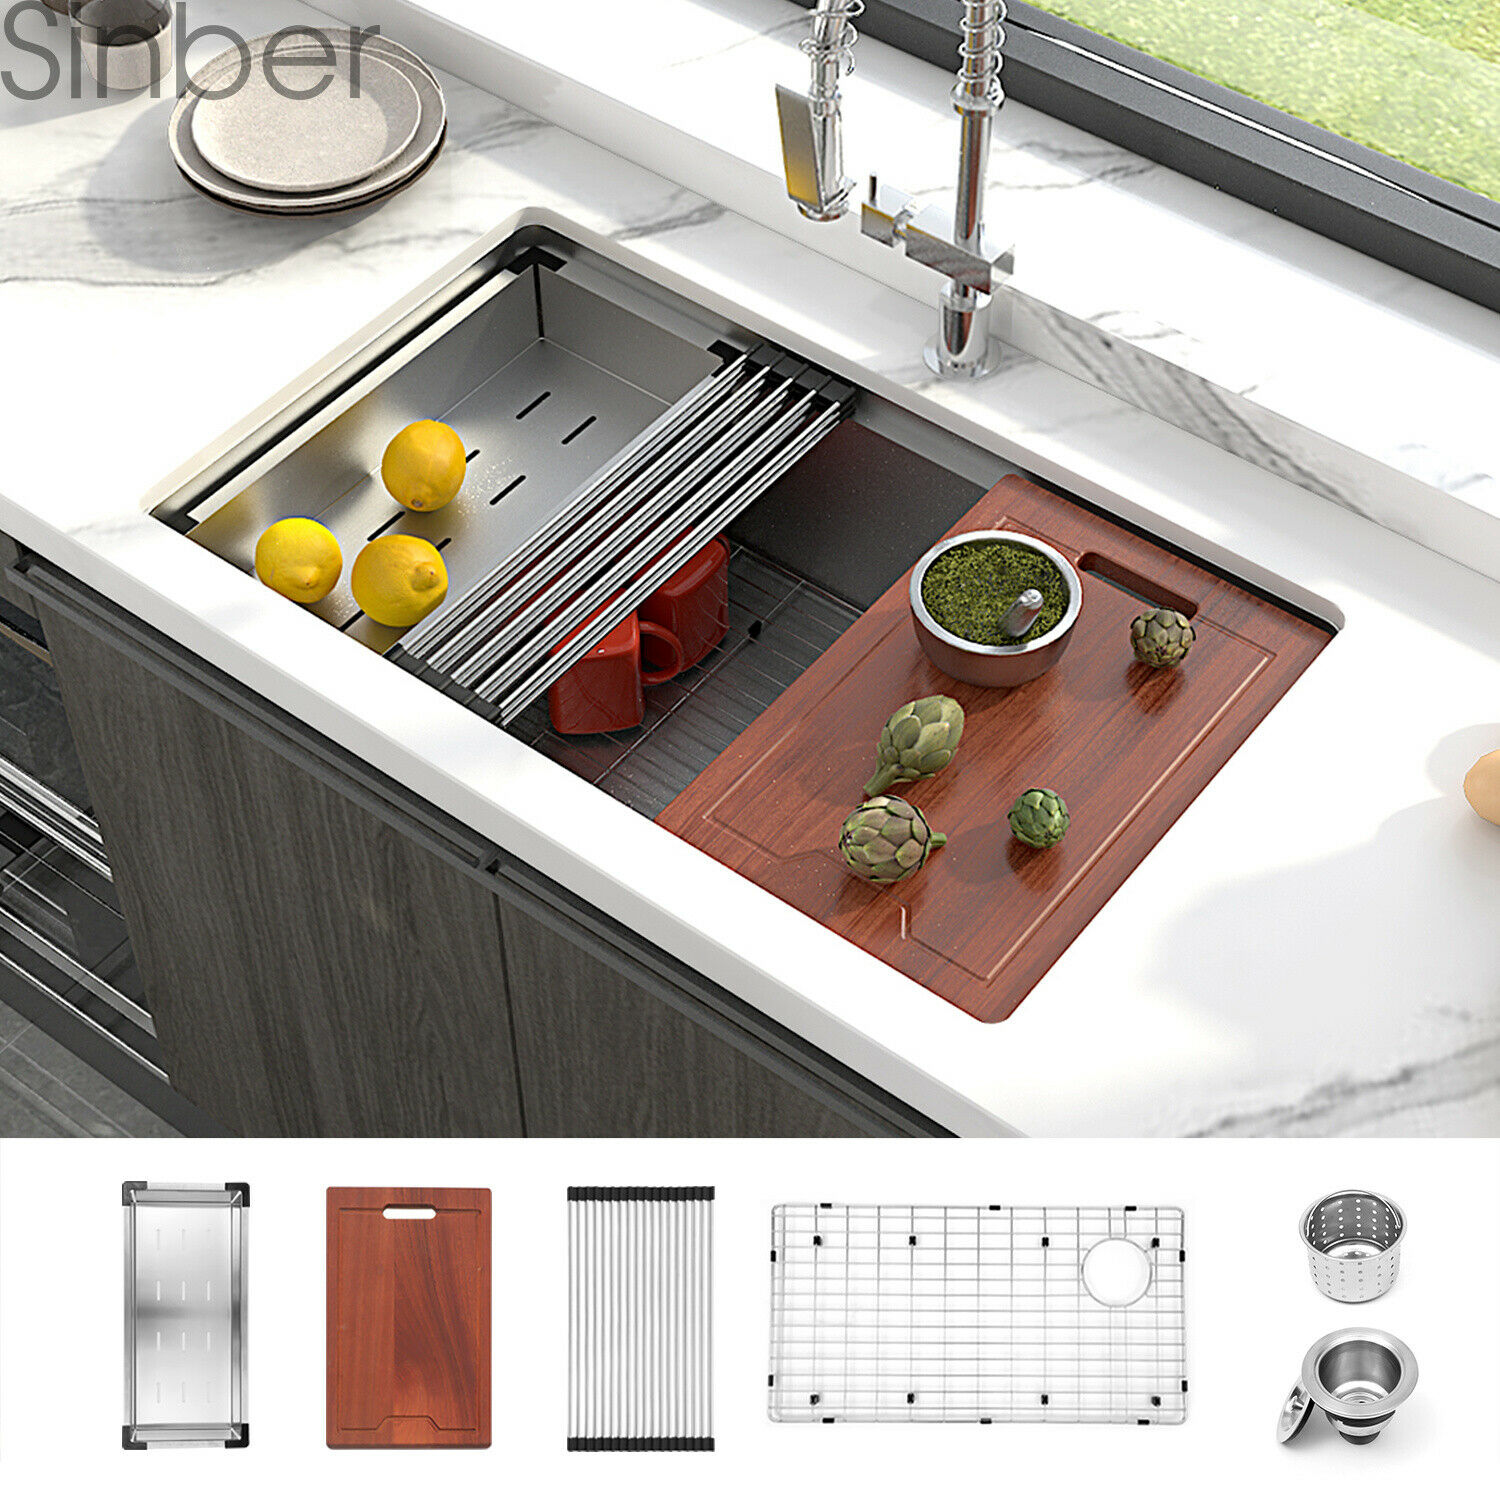 Sinber 30" Undermount 16 Gauge Single Bowl Stainless Steel Kitchen Sink